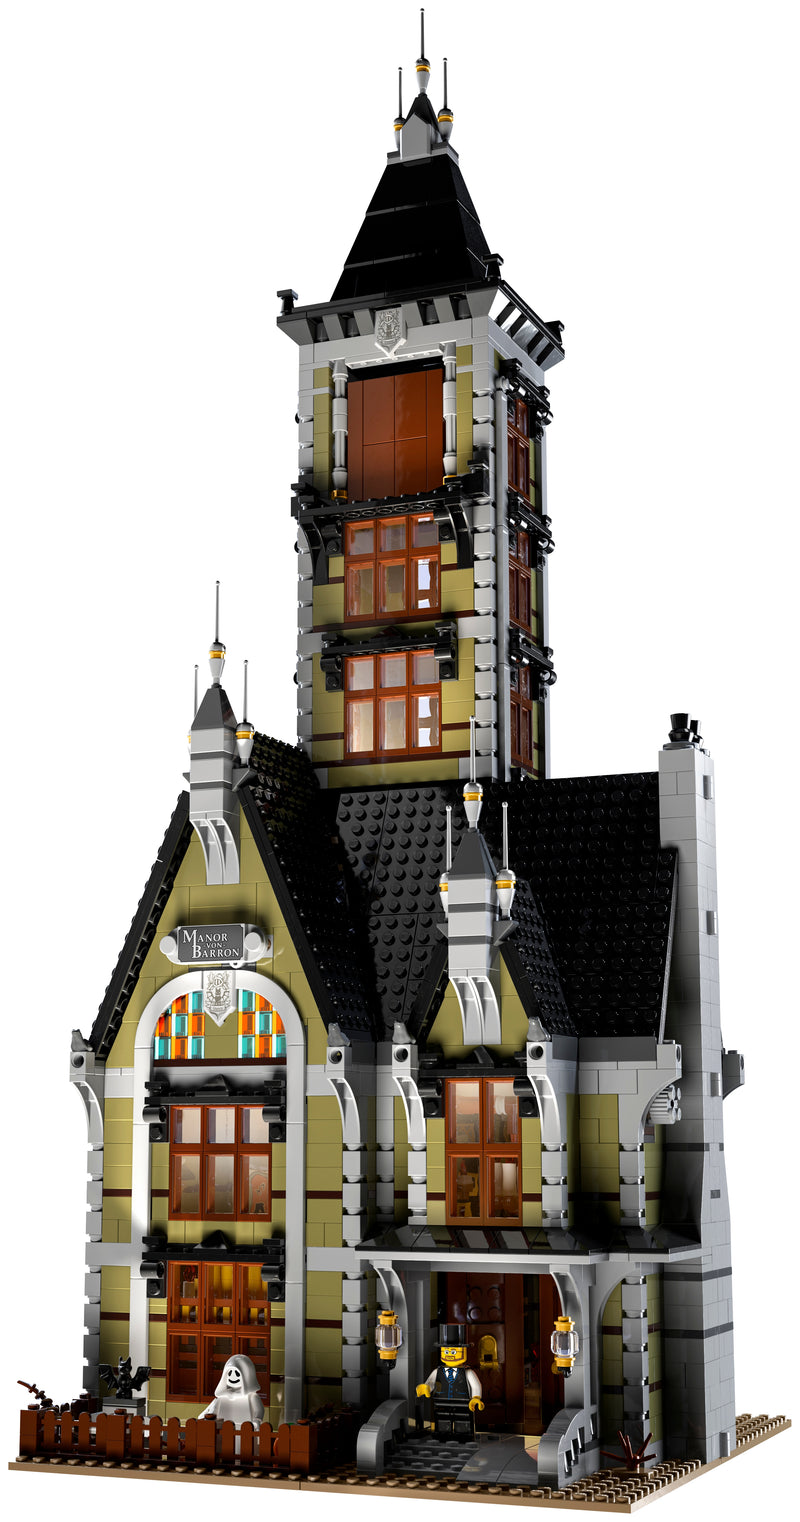 LEGO ICONS Haunted House 10273